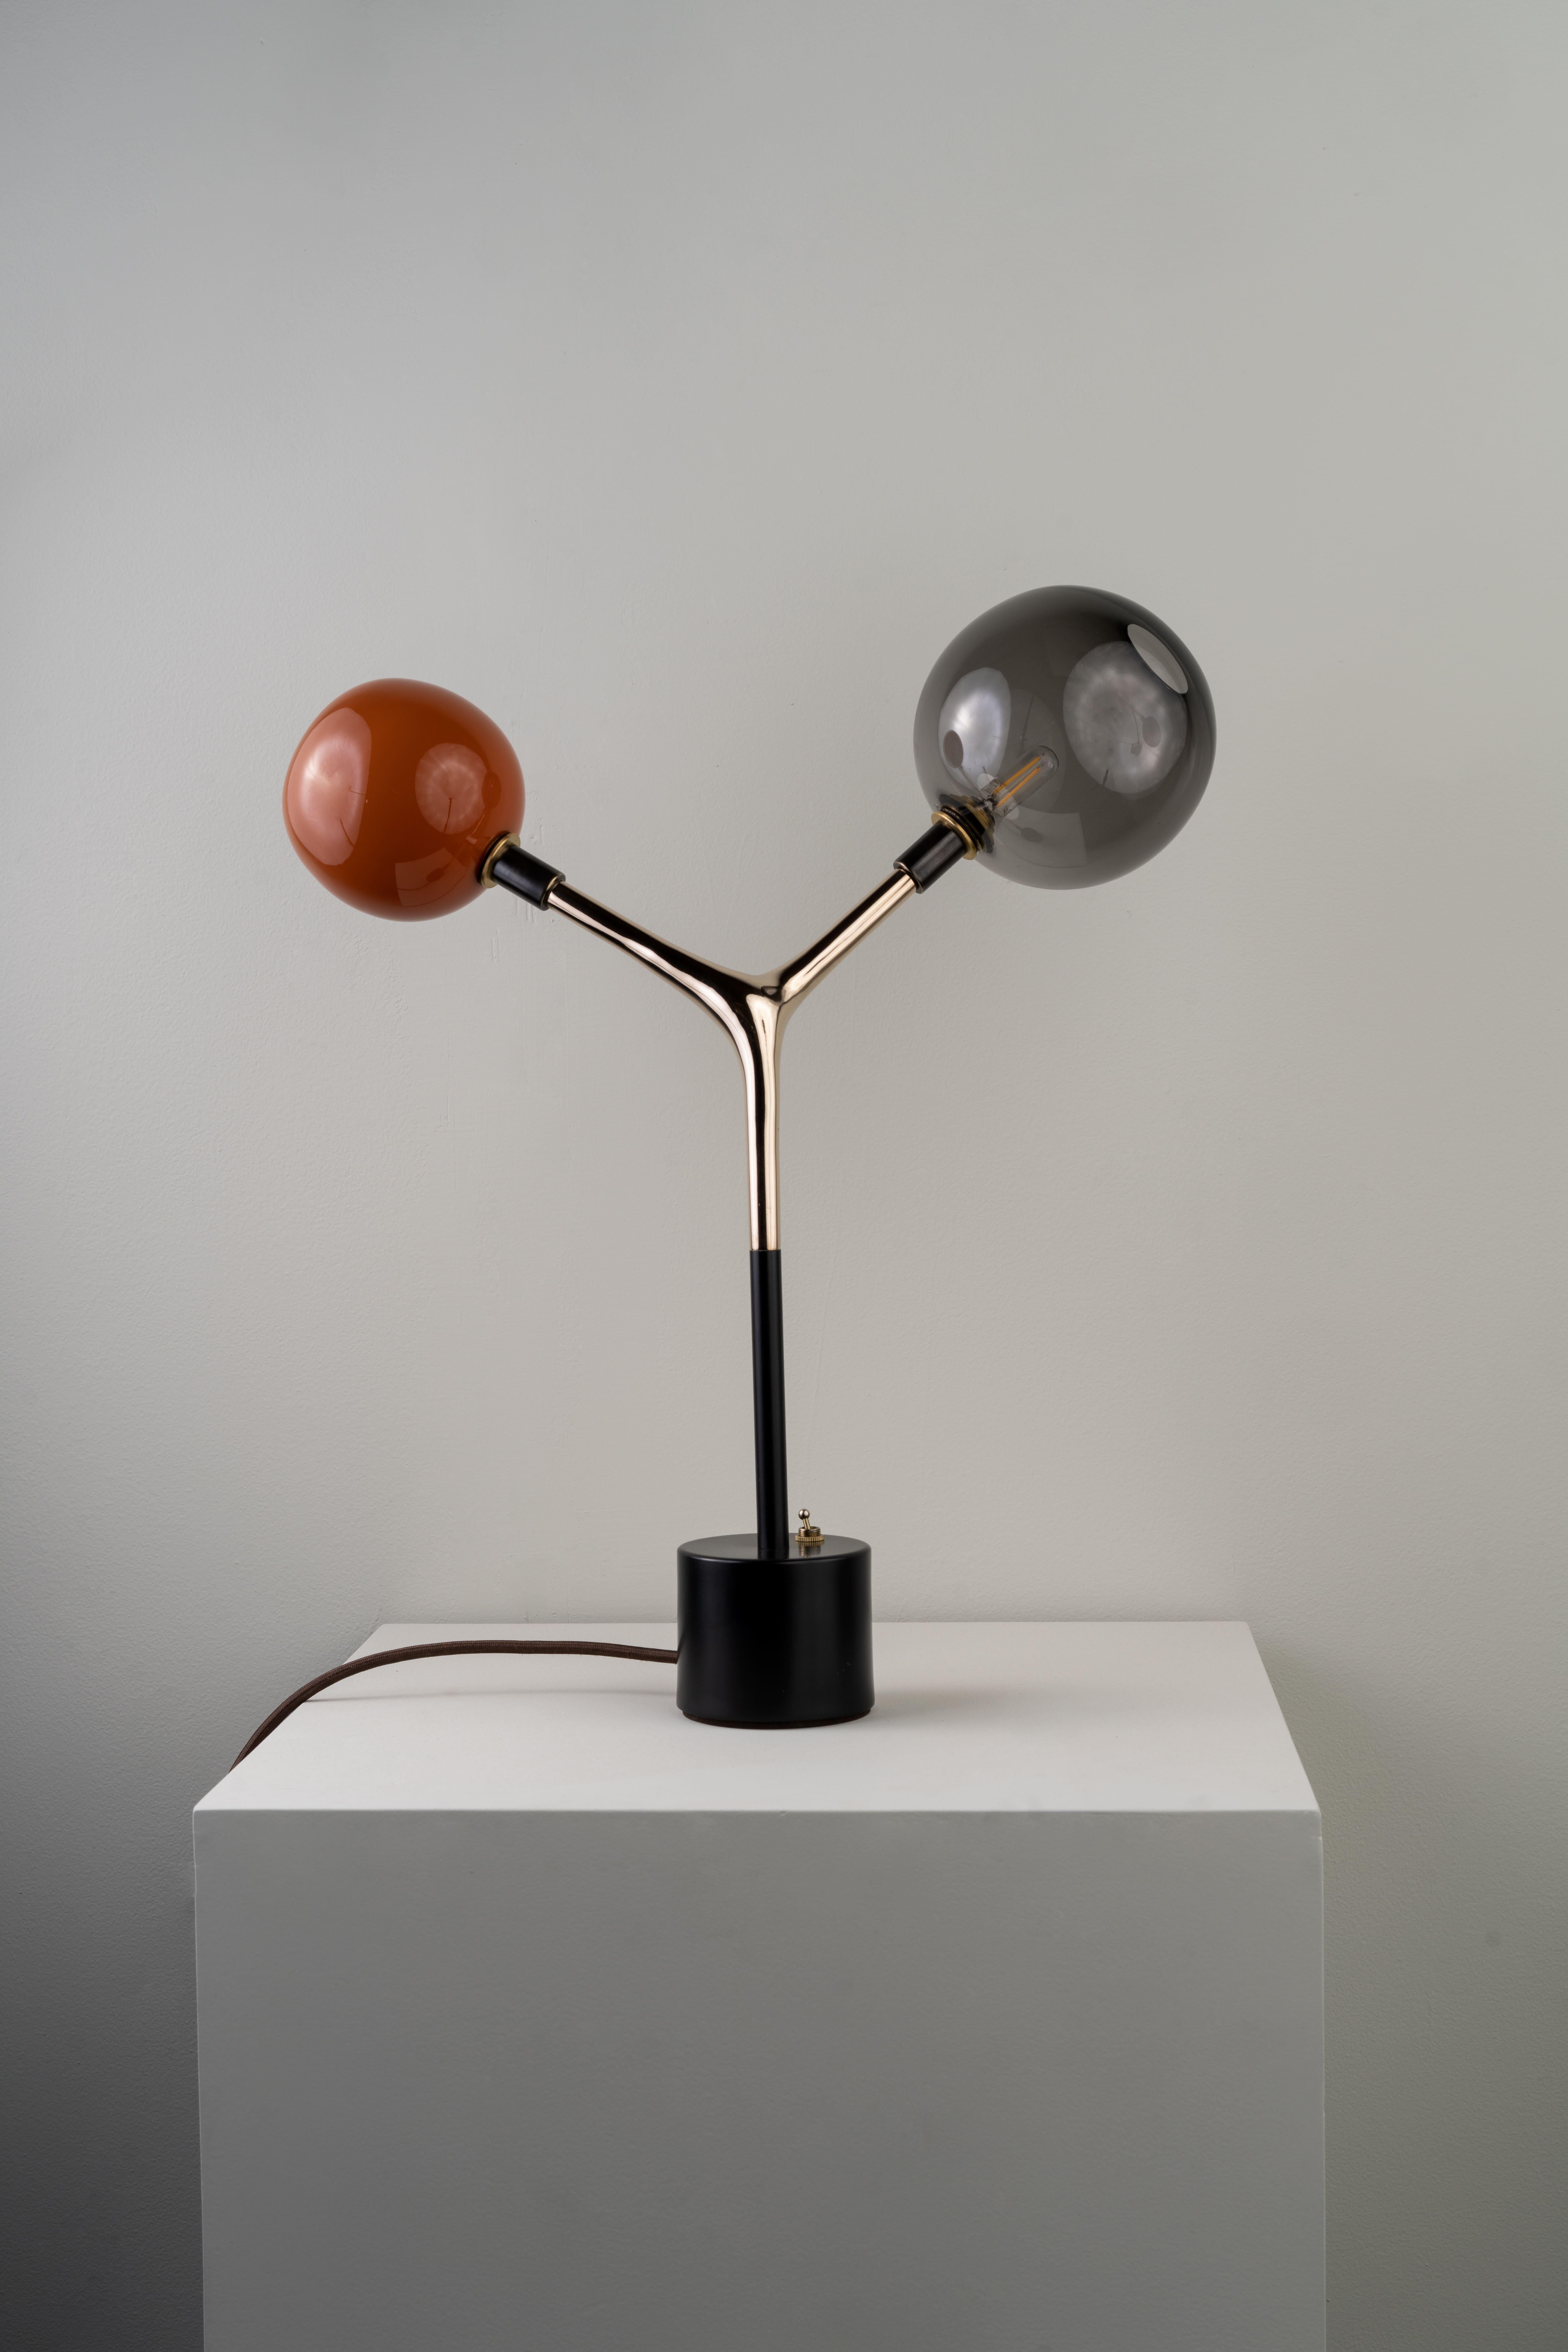 La lampe de table MÁCULA a été conçue pour la Collection S/One par l'artiste mexicaine Isabel Moncada. 

Mácula, la forme organique et asymétrique offre une présence simple mais charmante. La lumière chaude de couleur vermillon crée une ambiance